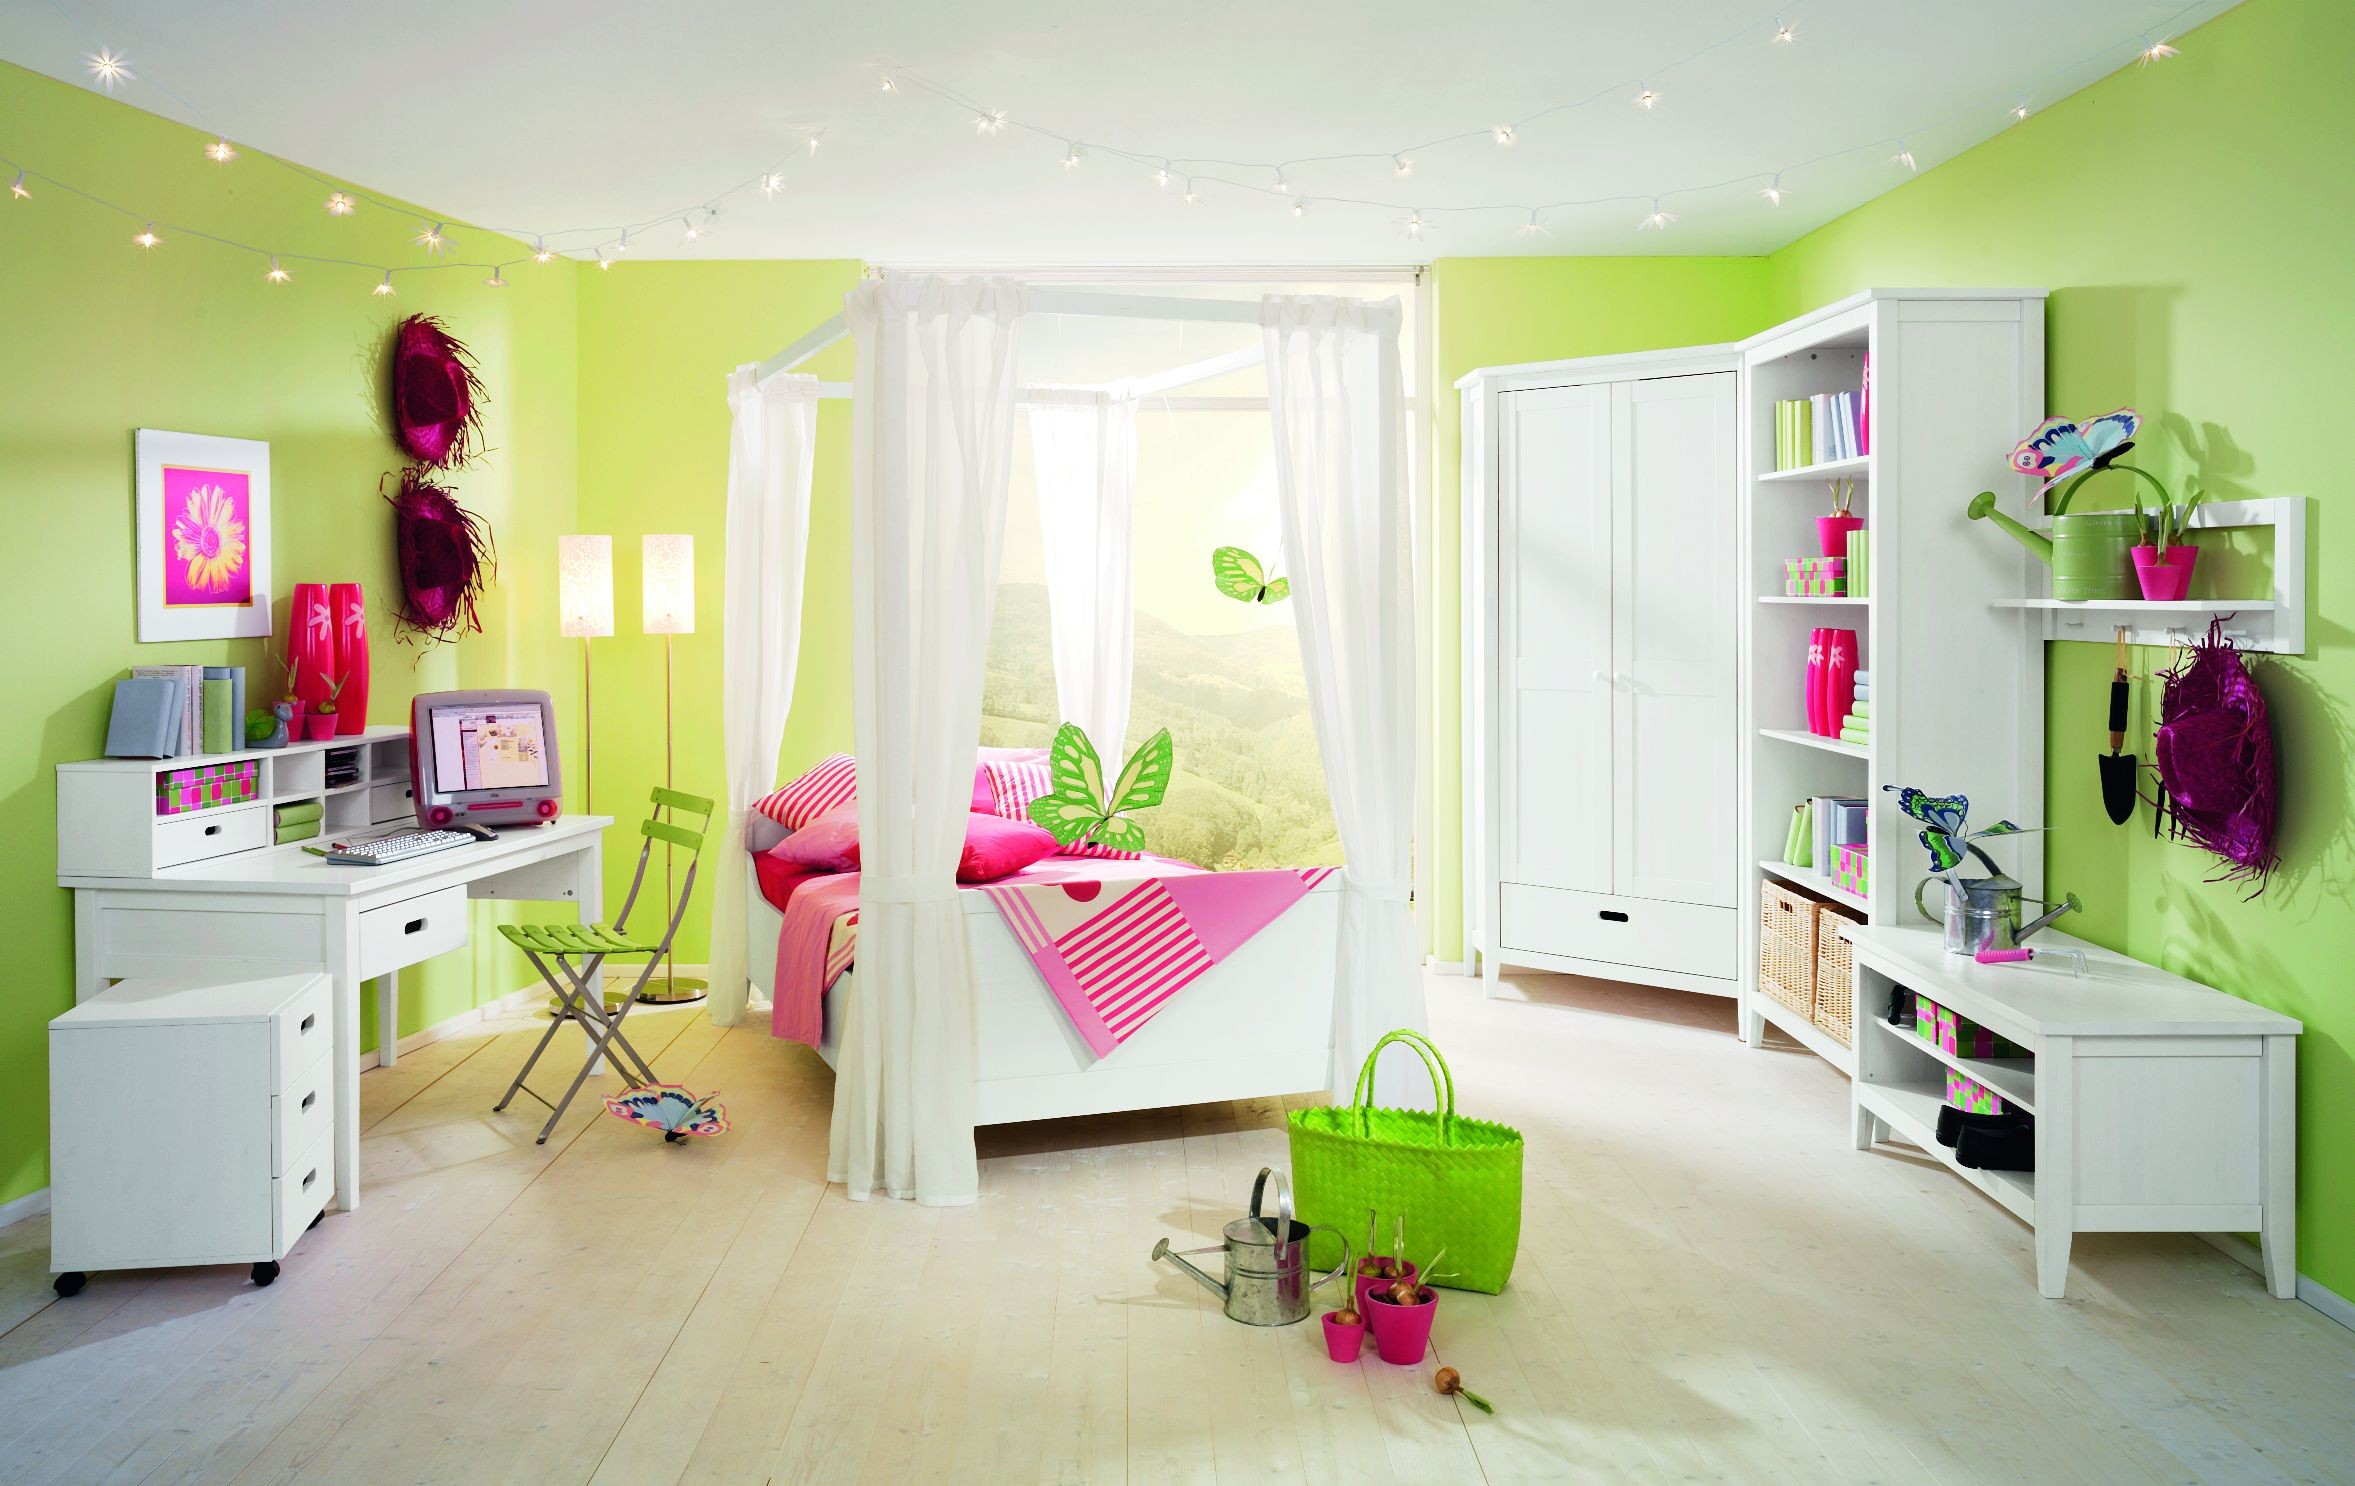 Мебель для детской комнаты  в спб » Картинки и фотографии дизайна .